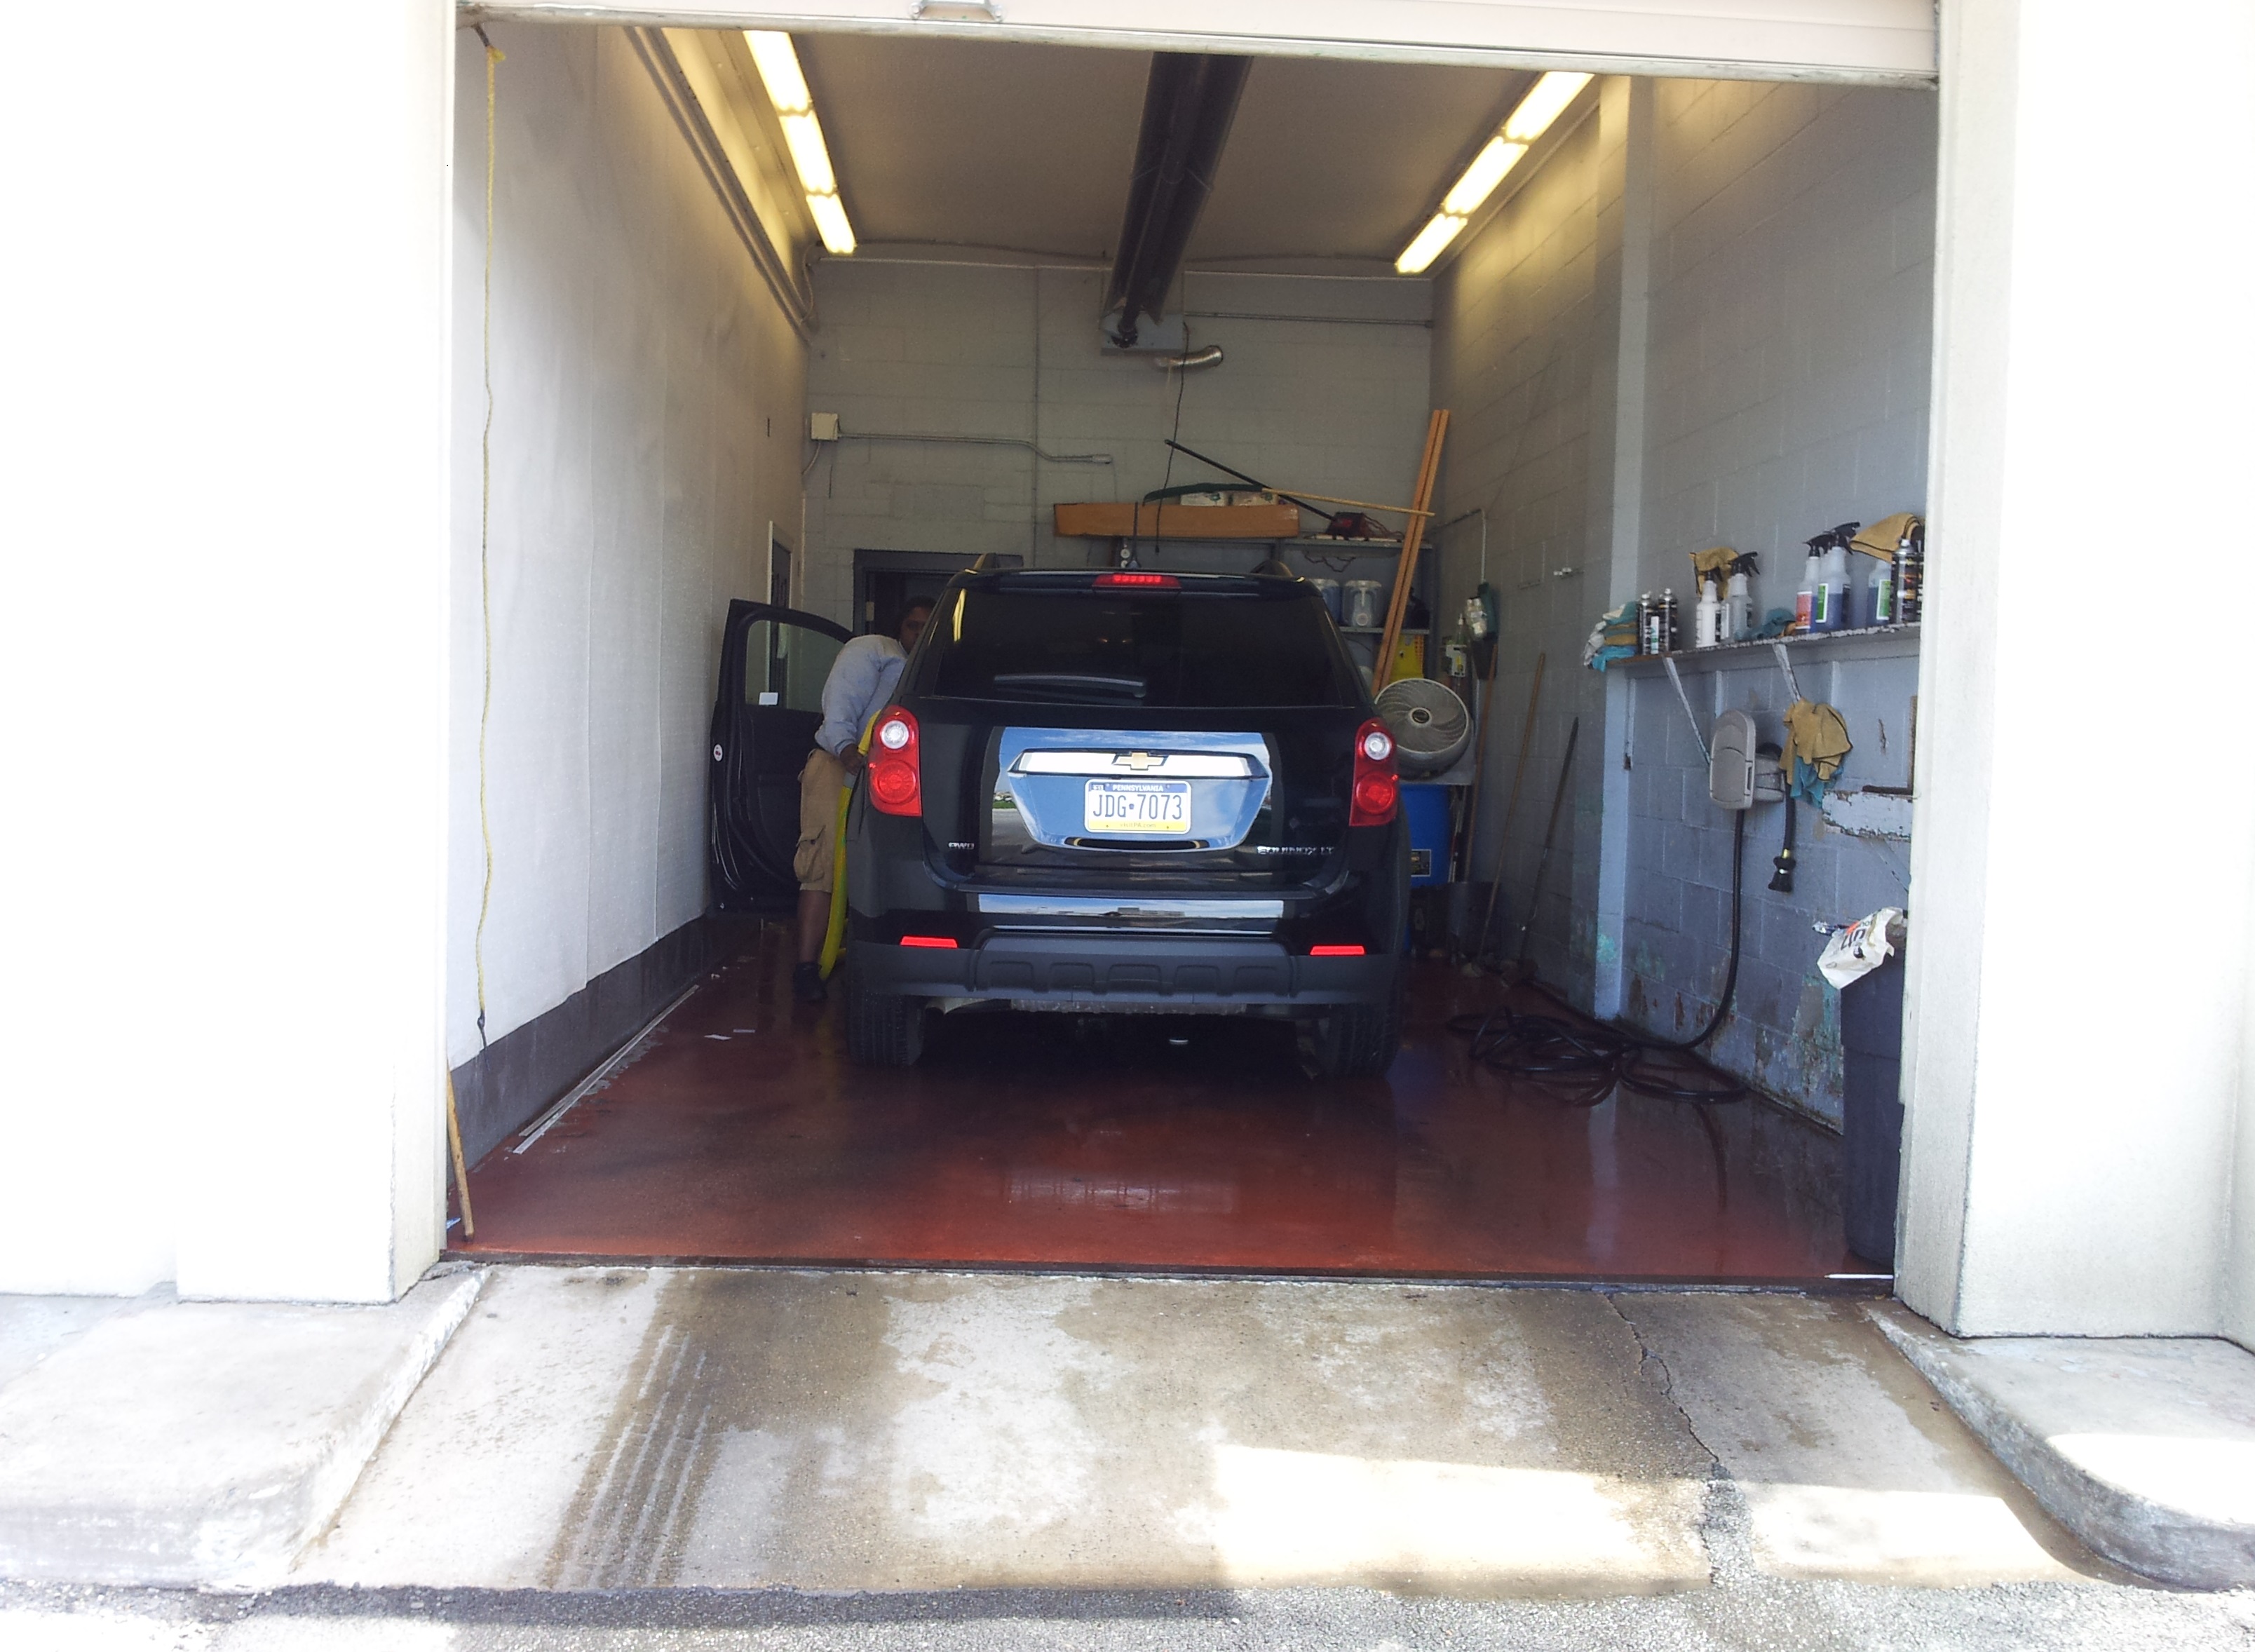 Enterprise kirkwood highway car wash facility